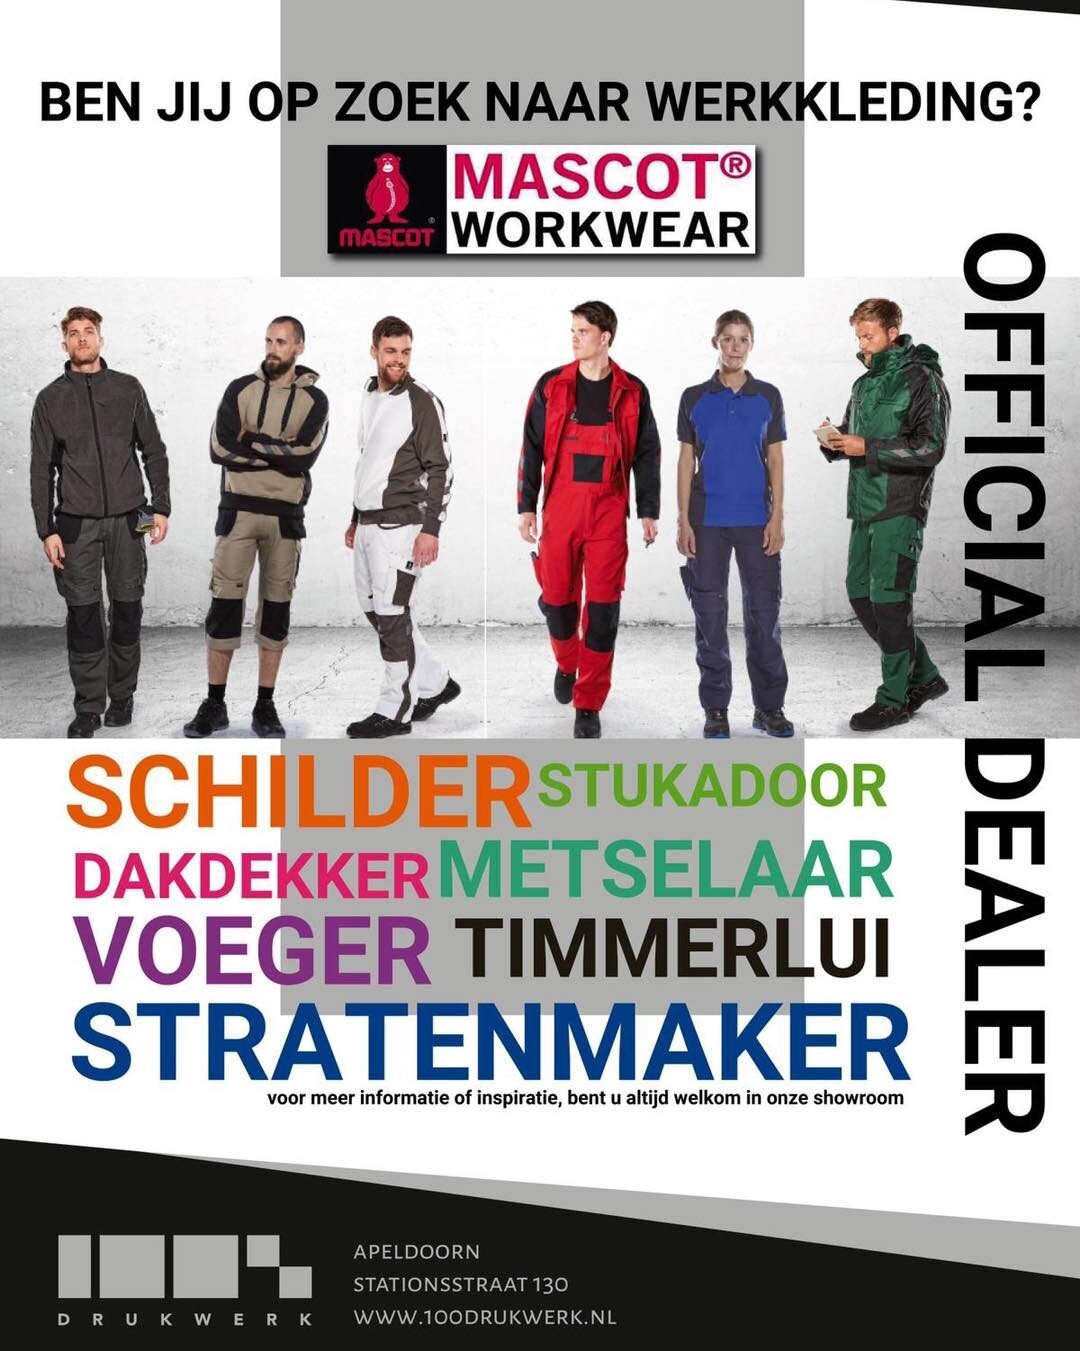 Wij zijn officieel dealer van Mascot Workwear! 

Samen met Mascot kunnen wij uw bedrijf voorzien van kwaliteitsvolle kleding, die aansluiten bij de uitstraling van uw bedrijf. 
Uiteraard kunnen alle items ook voorzien worden van een bedrijfslogo.

Be